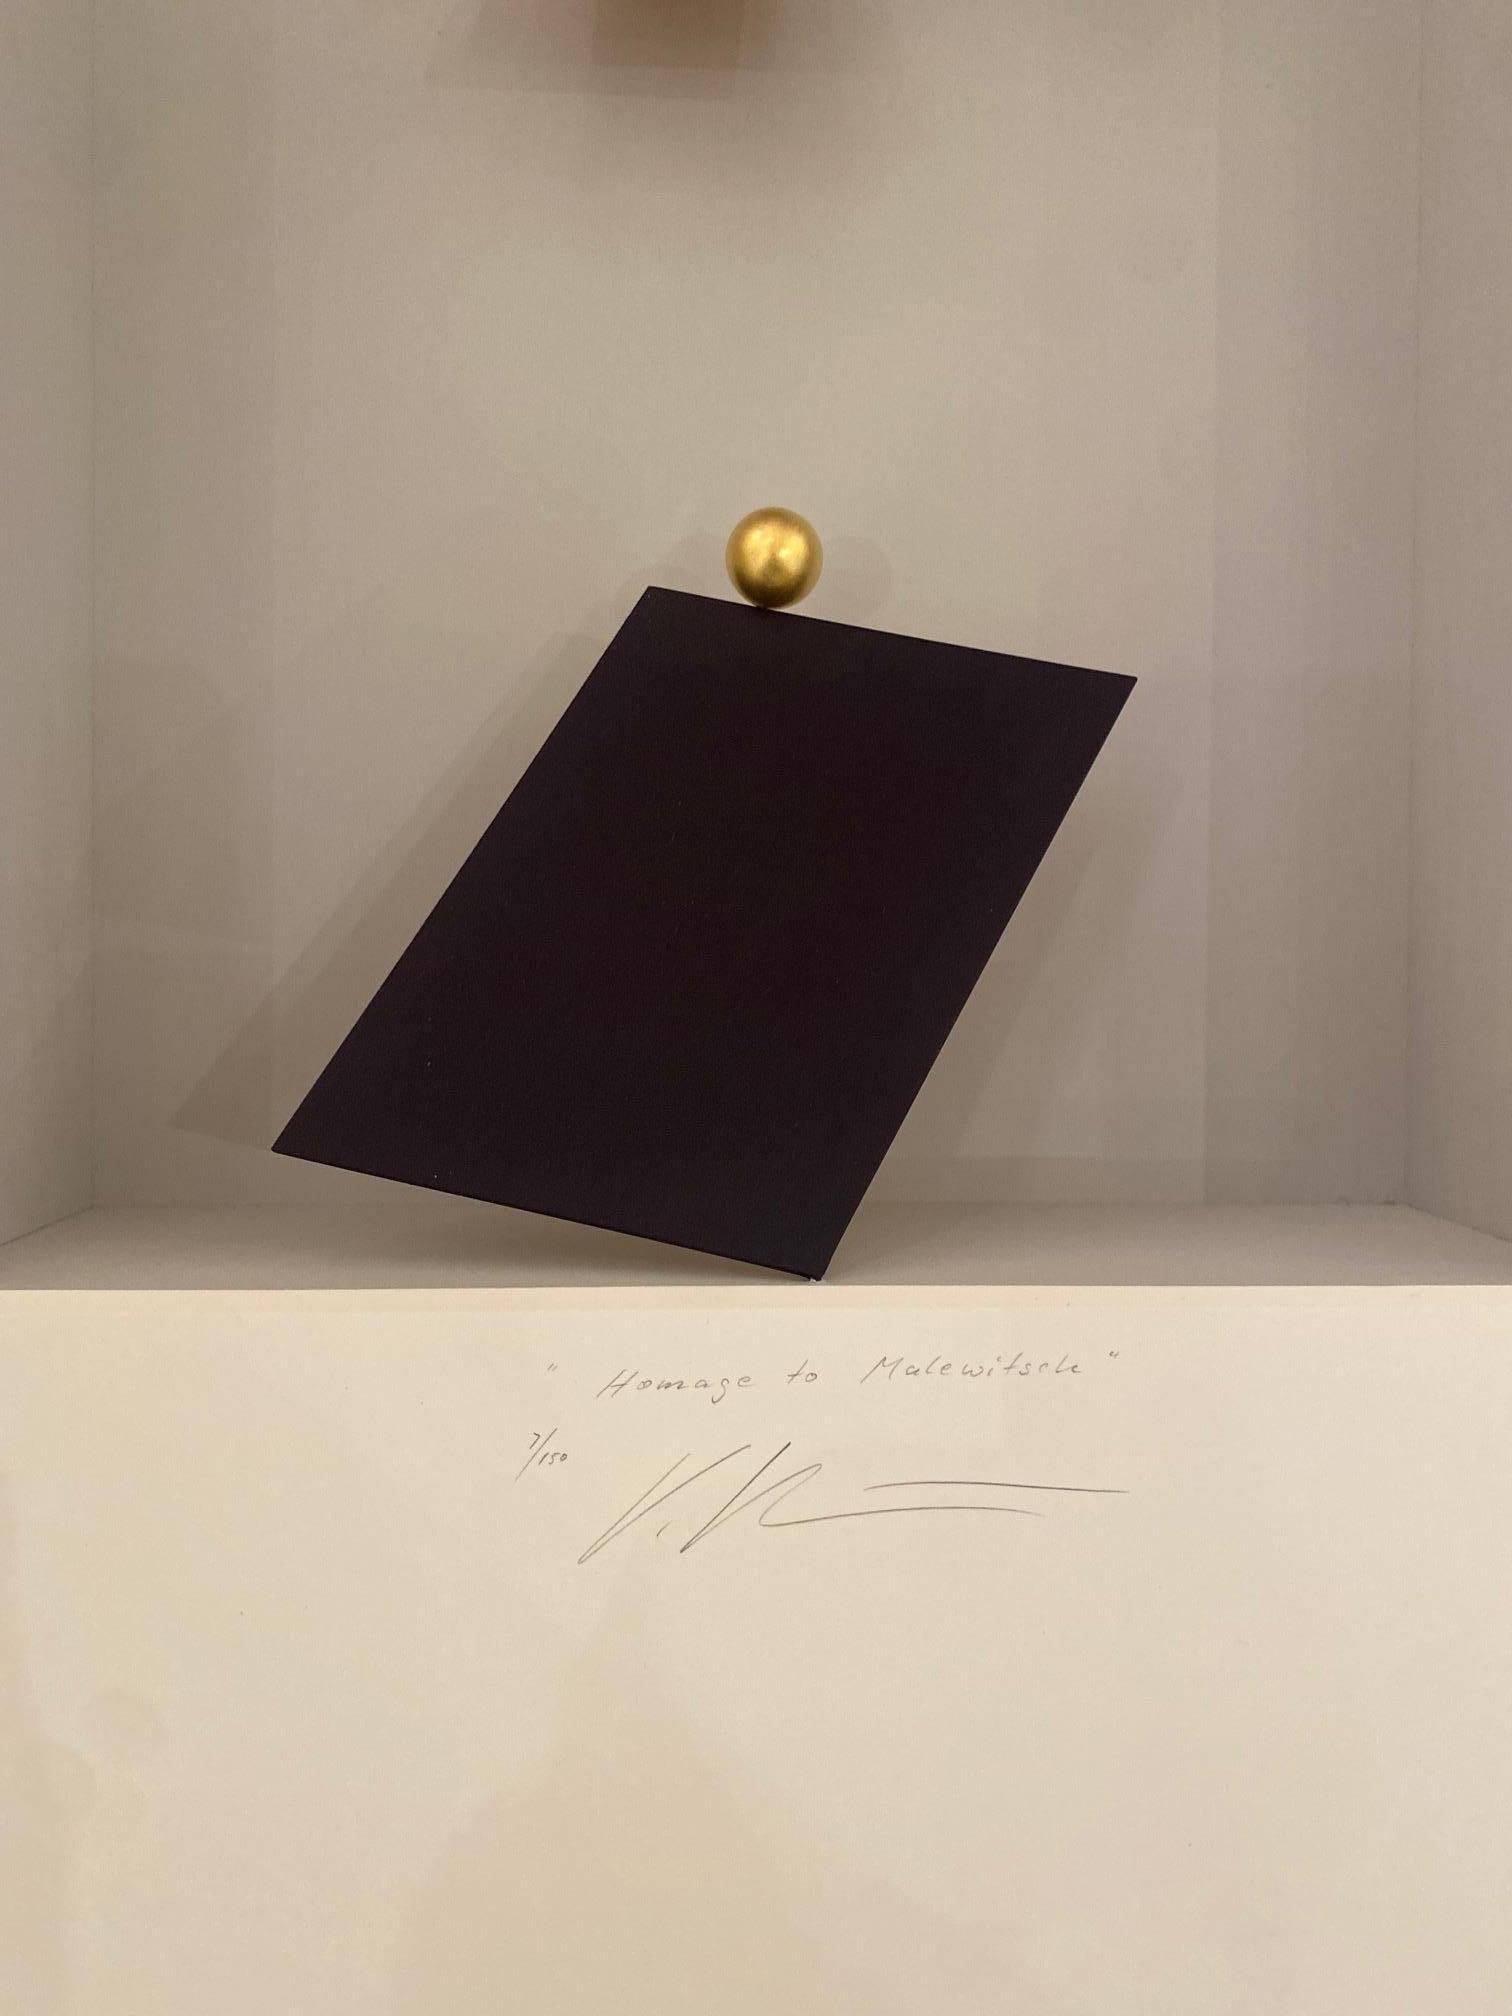 Hommage an Malewitsch - zeitgenössische Hommagekunst in Schachteln von Kasimir Malewitsch (Assemblage), Mixed Media Art, von Volker Kuhn